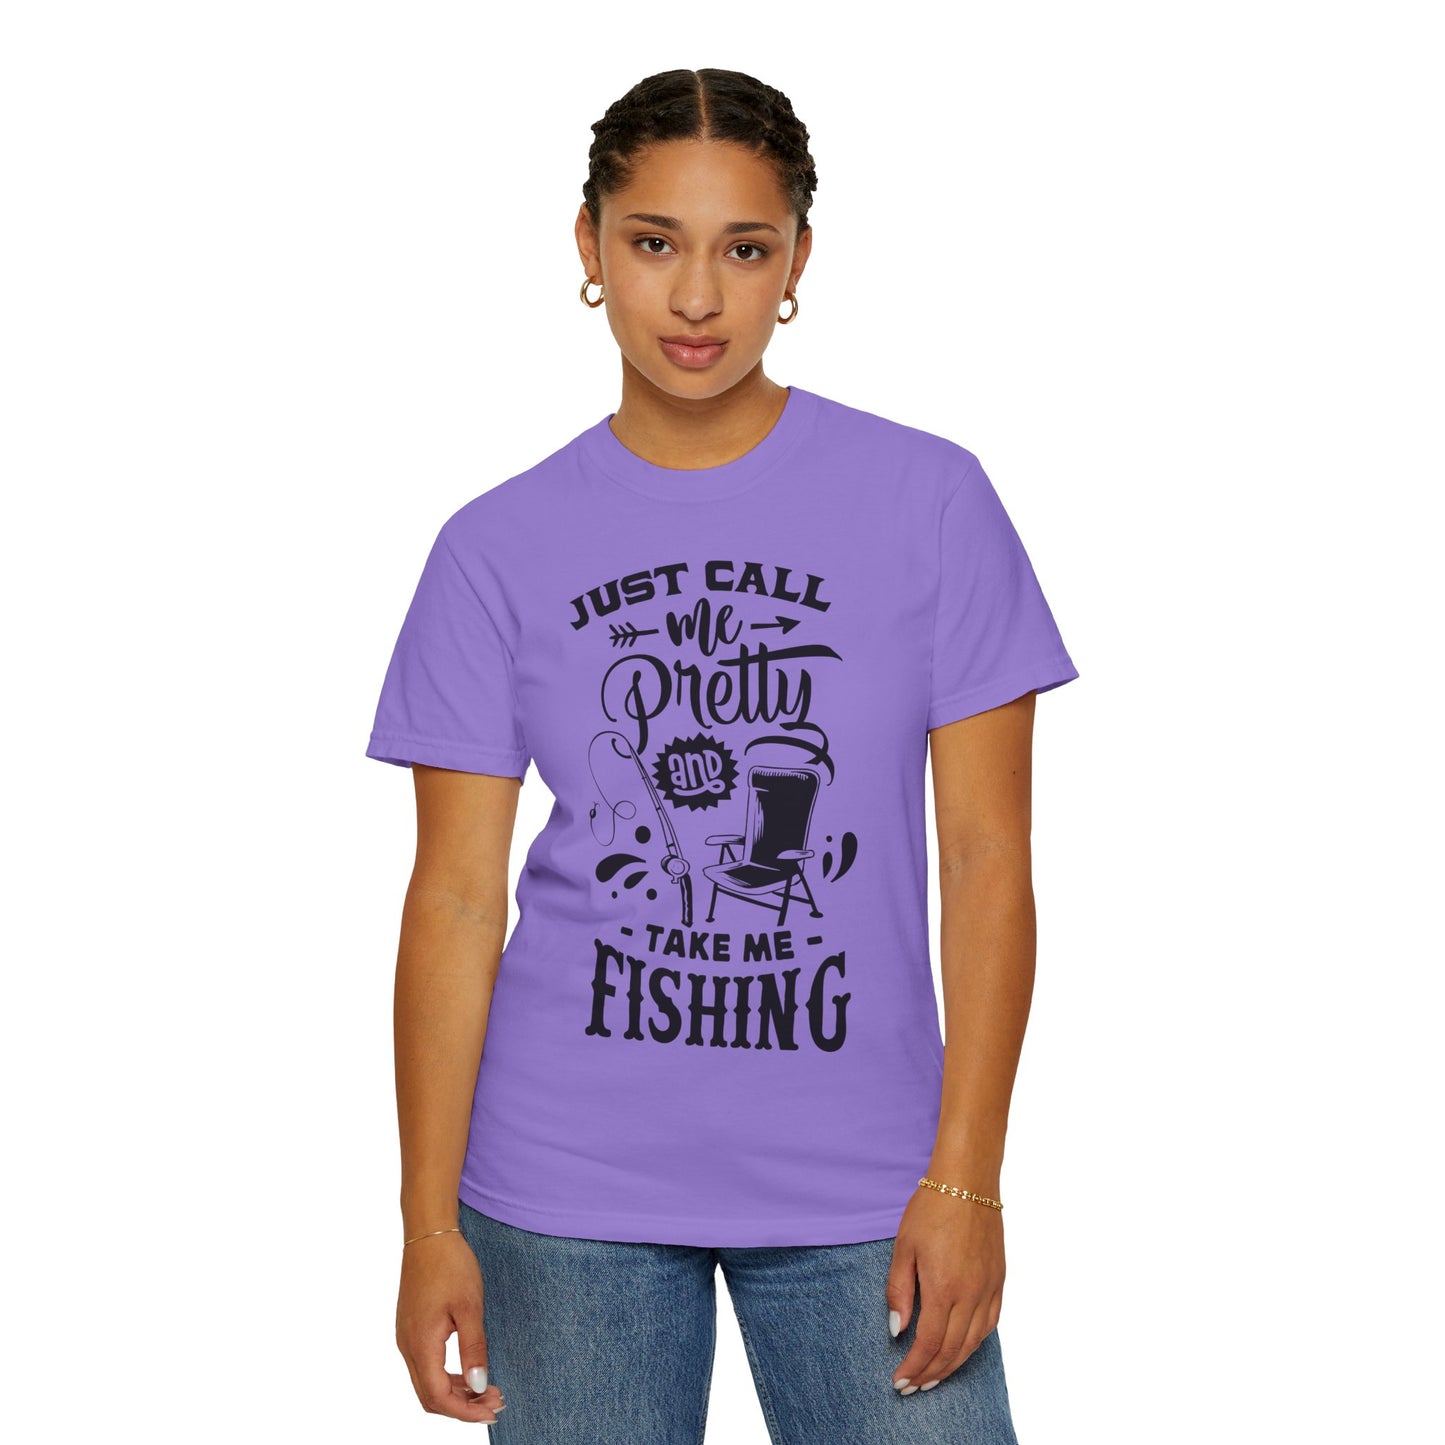 Take me fishing: Unisex Garment-Dyed T-shirt